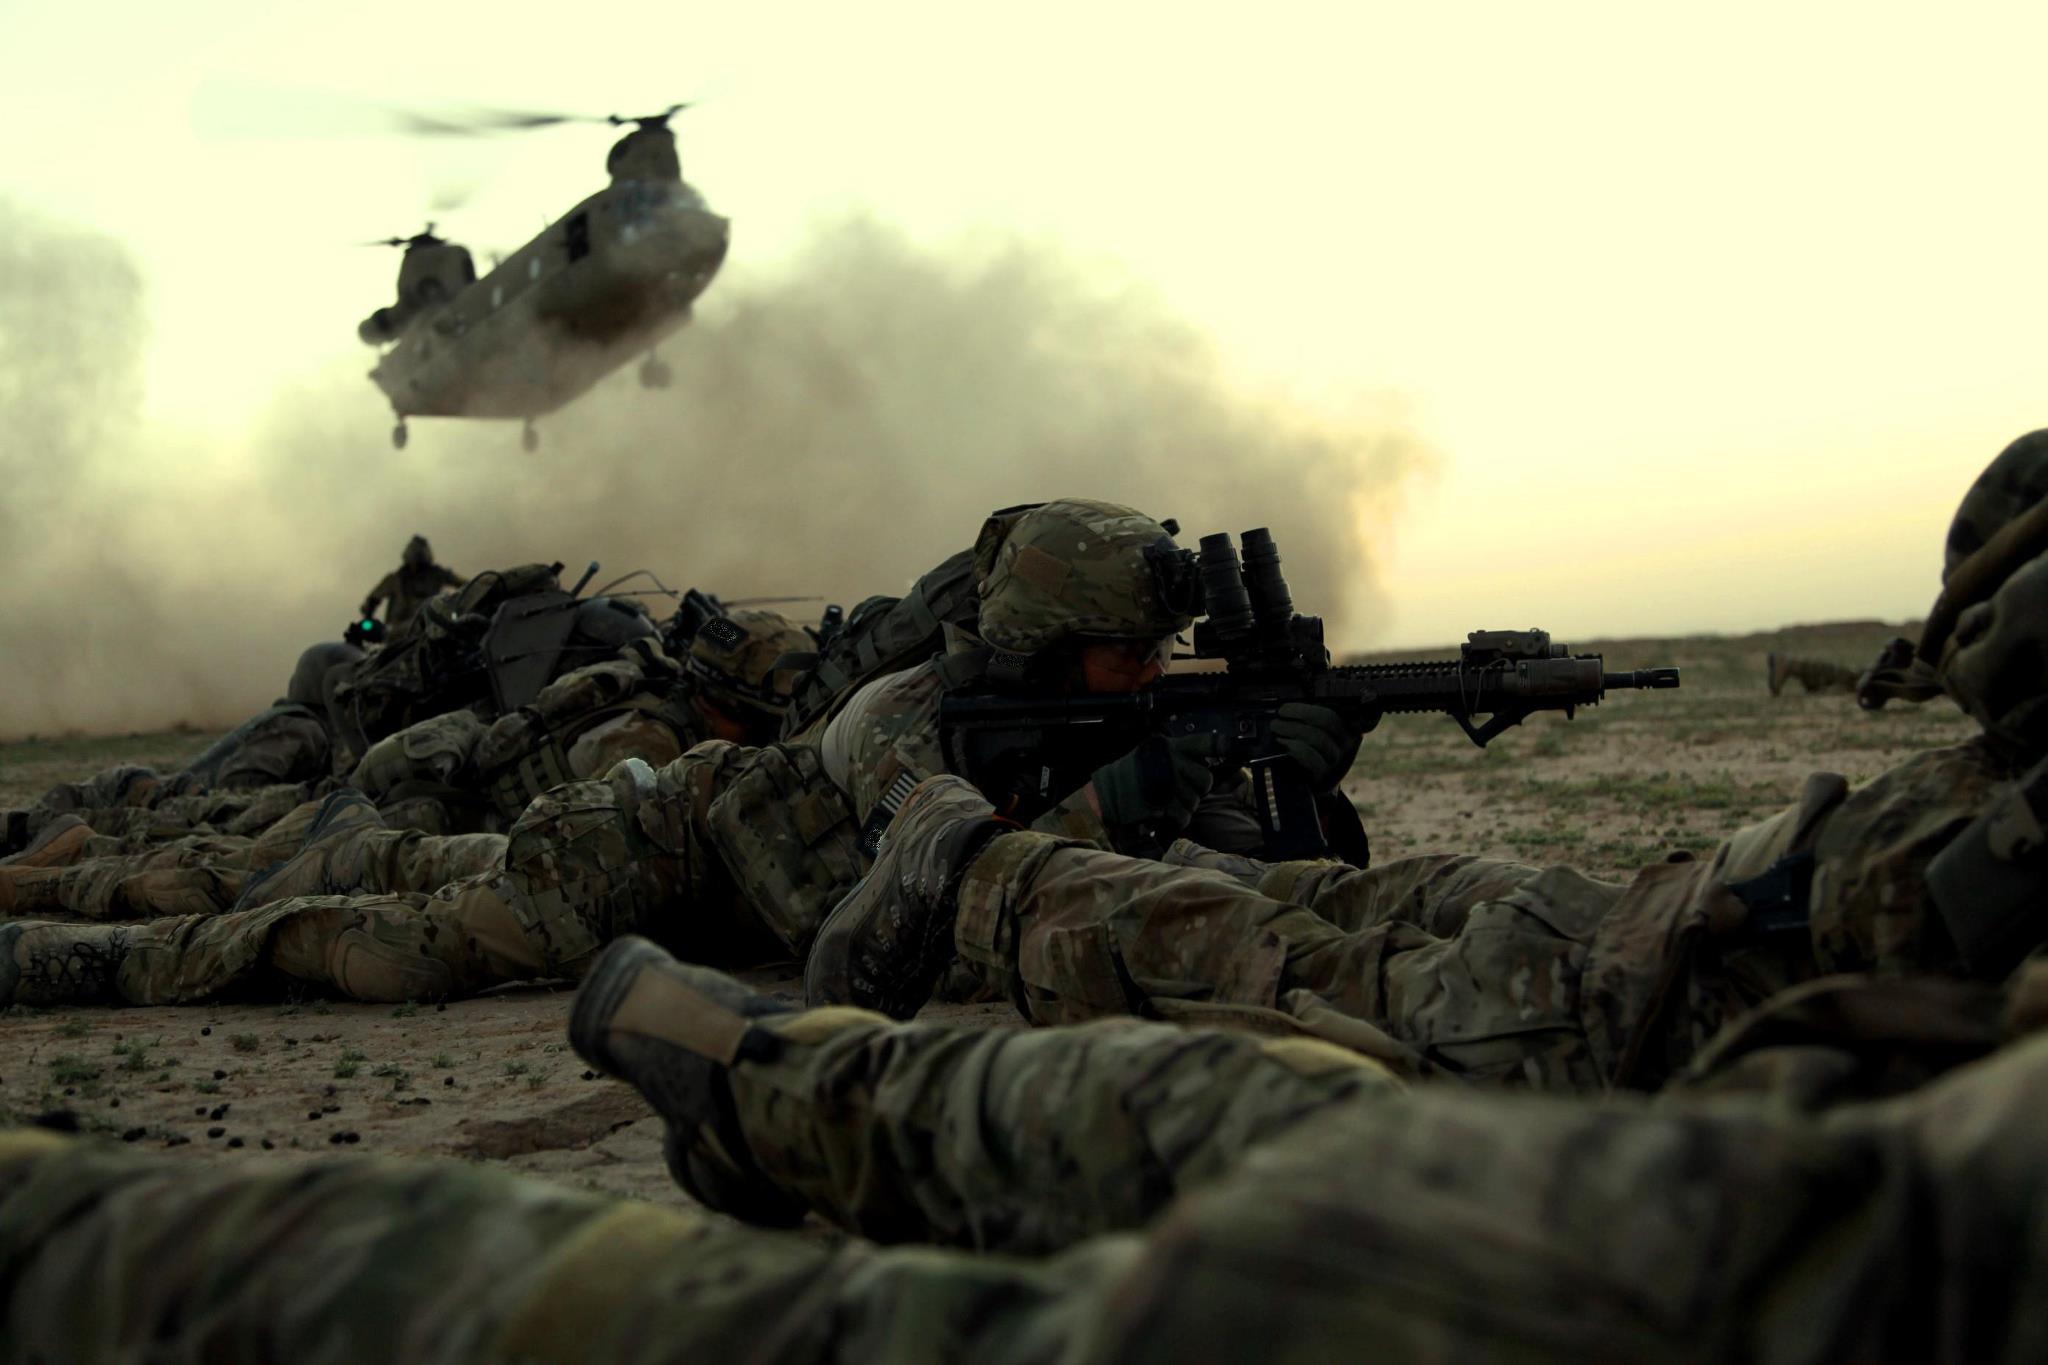 Image of U.S. soldiers in Afghanistan